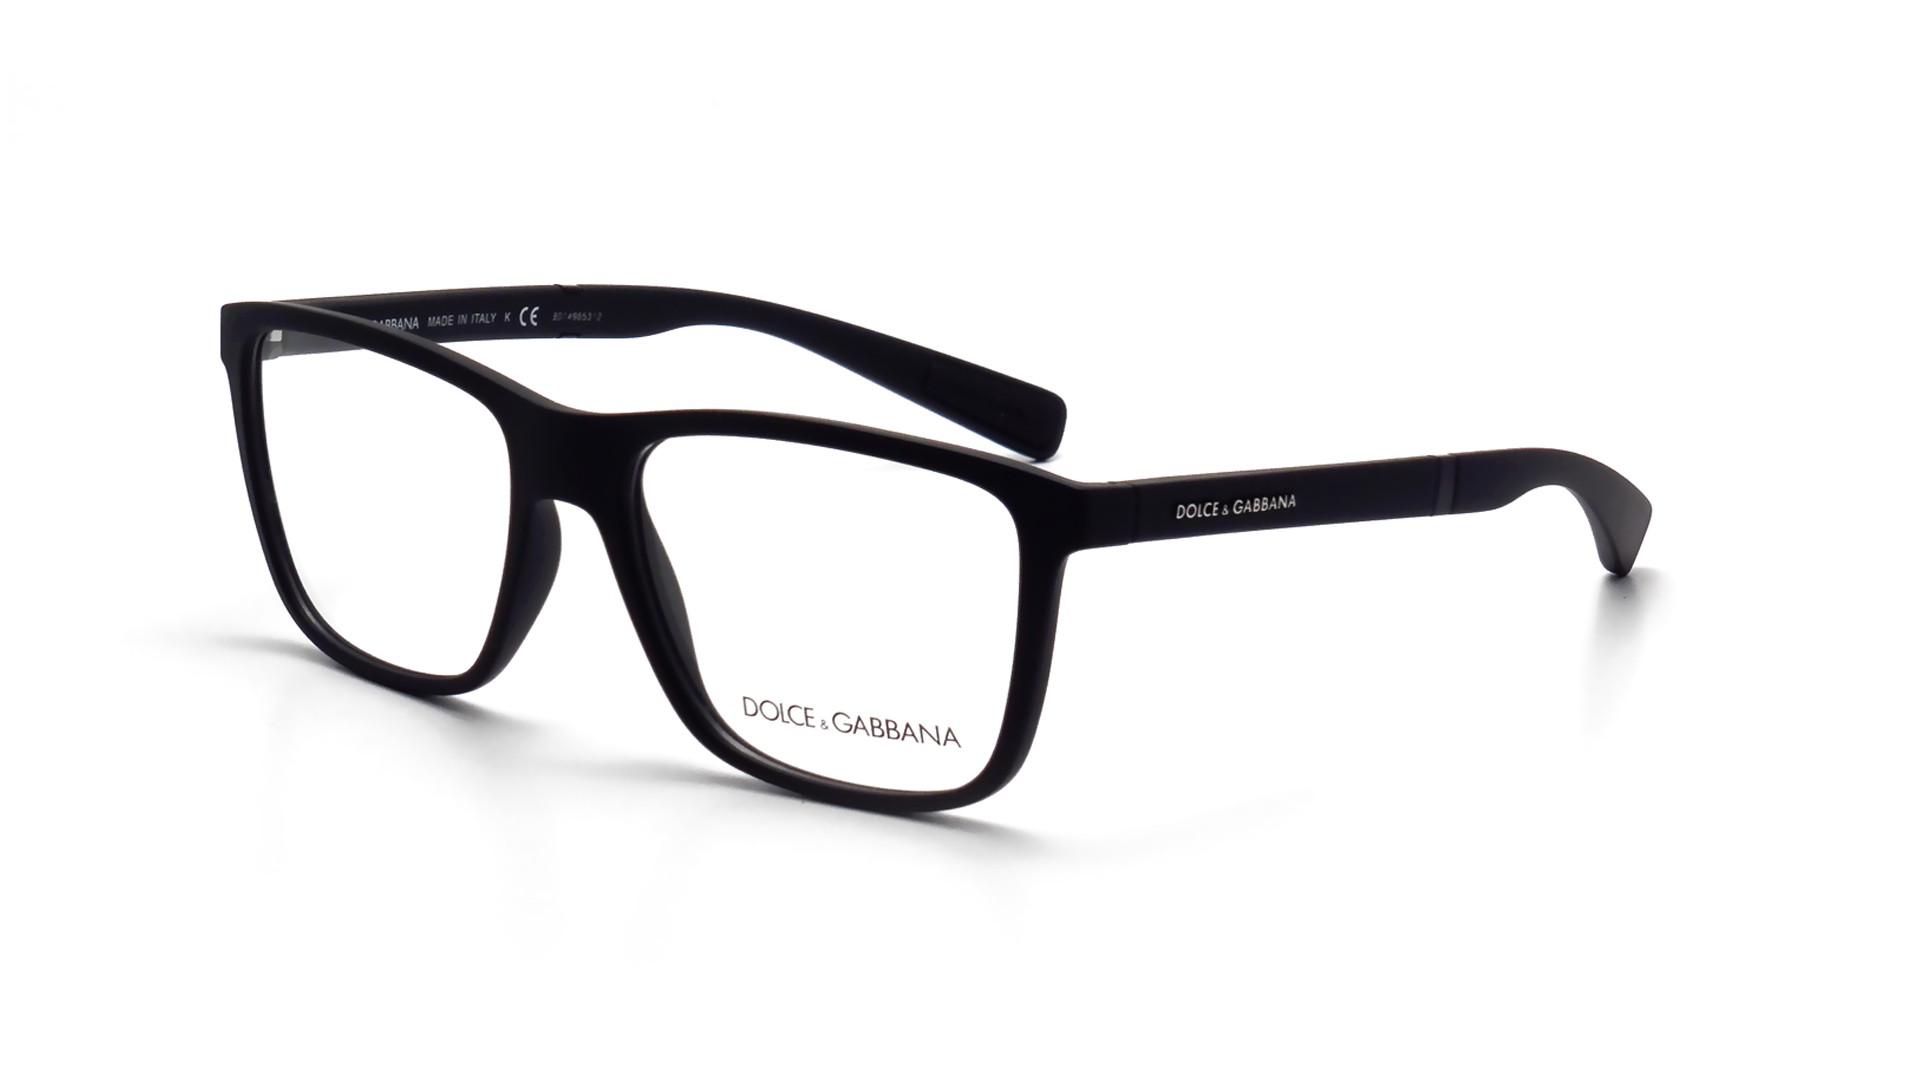 Für mutige Fashionistas: Dolce & Gabbana: Korrekturbrillen, 151,20 €